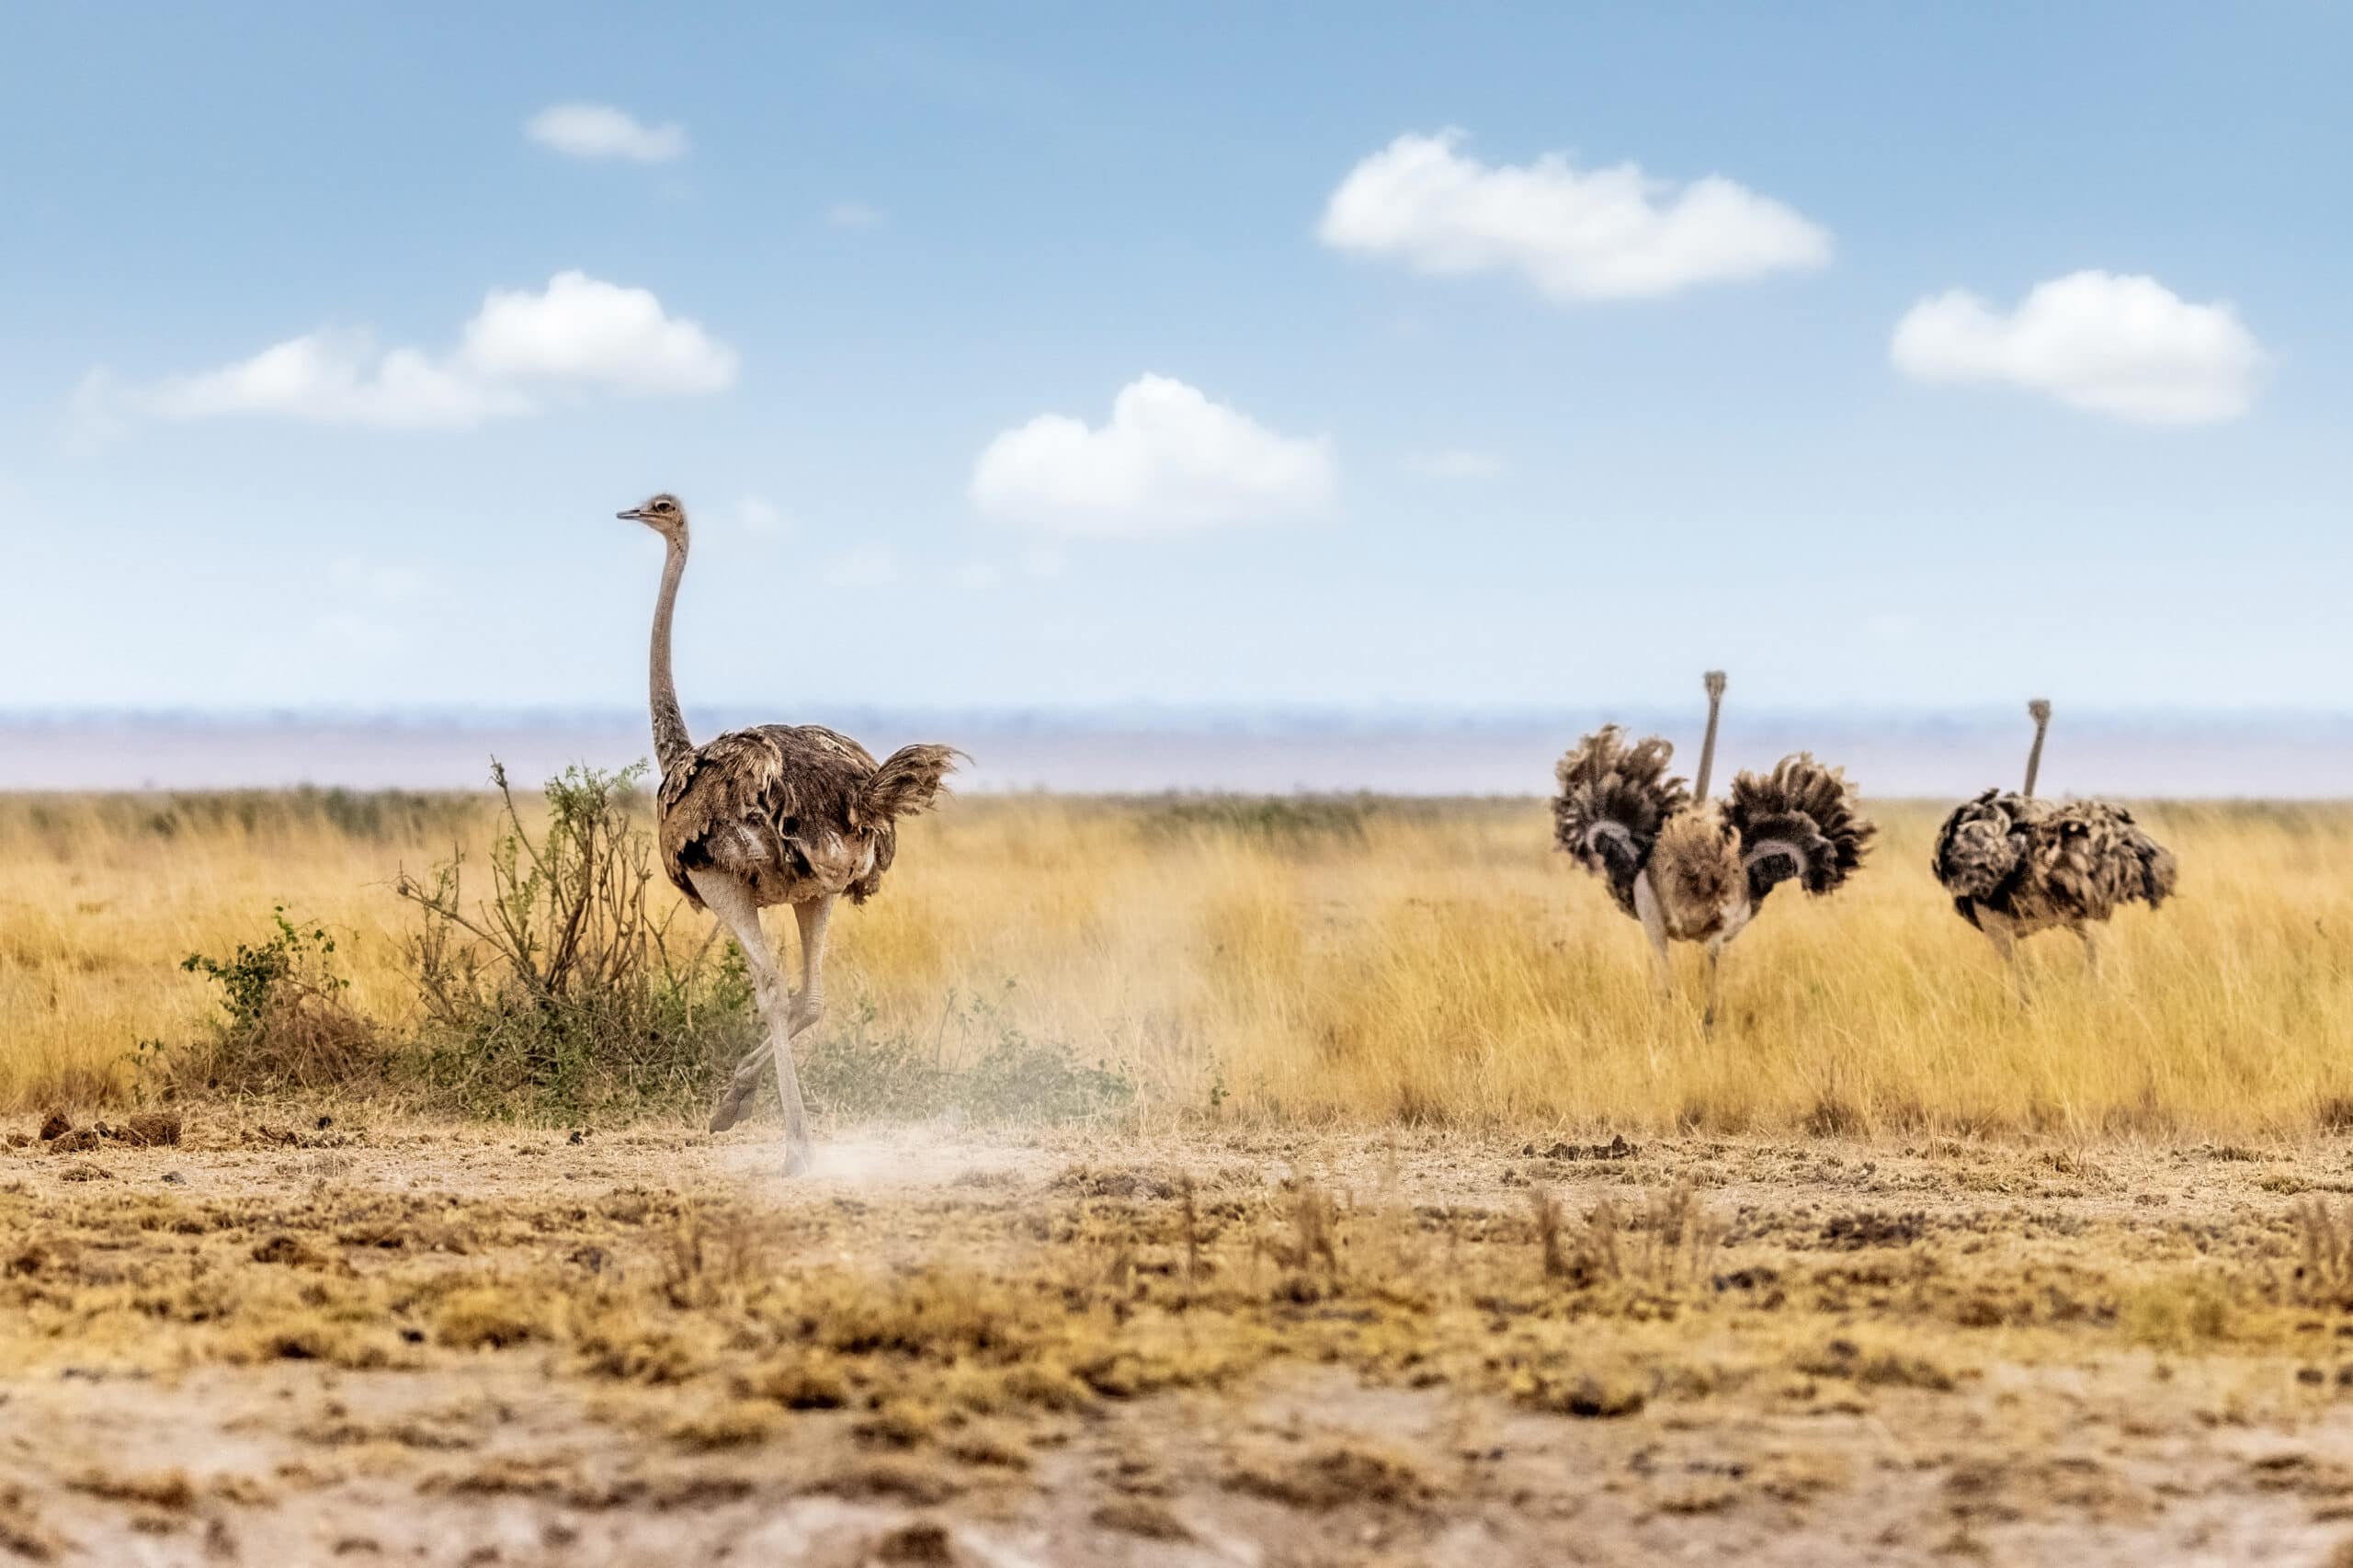 masai ostrich in kenya africa 2022 06 17 03 13 57 utc scaled